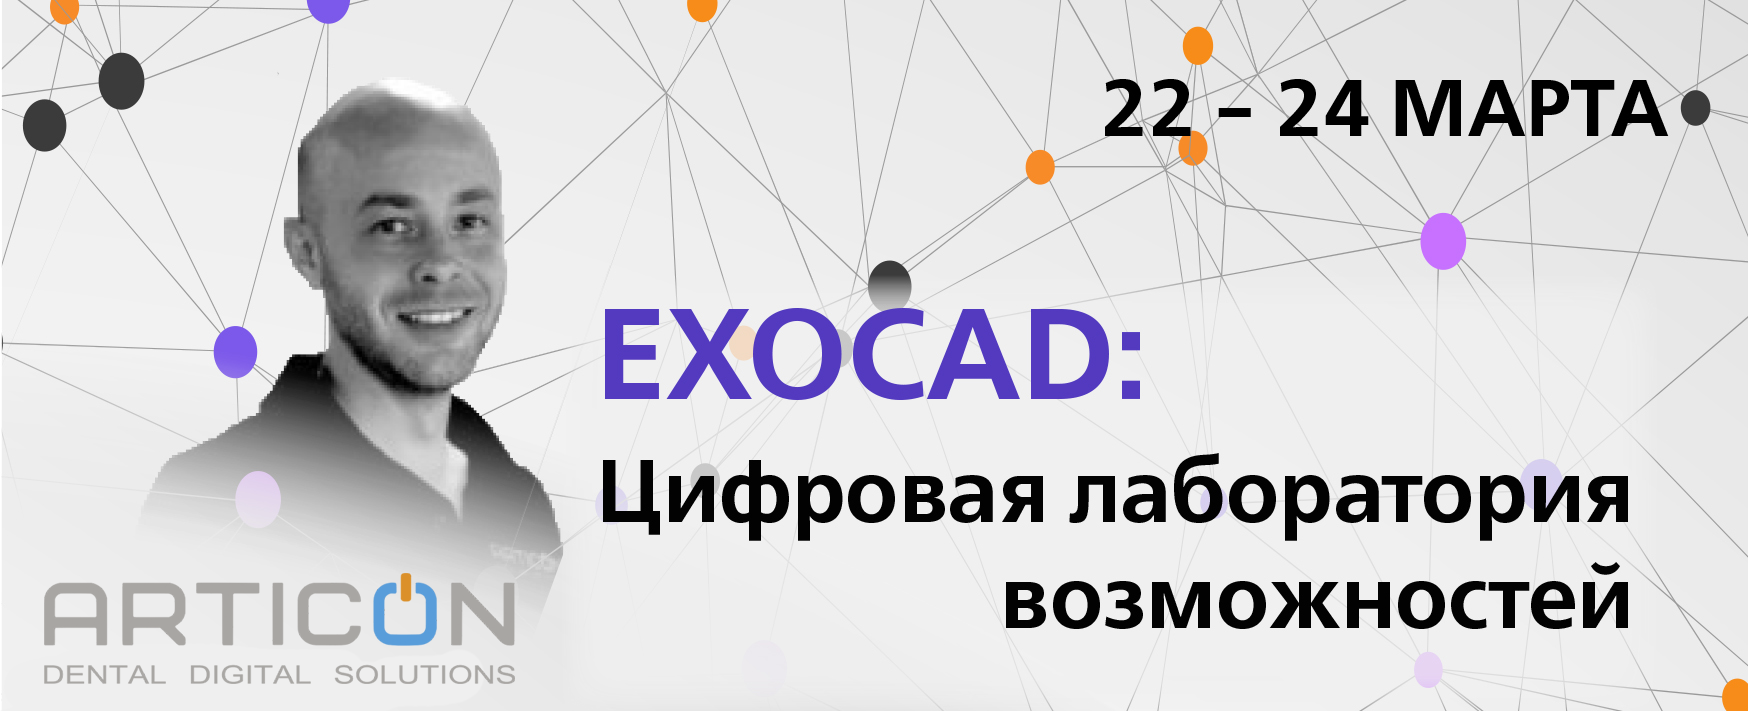 Exocad: Цифровая лаборатория возможностей (г. Красноярск)